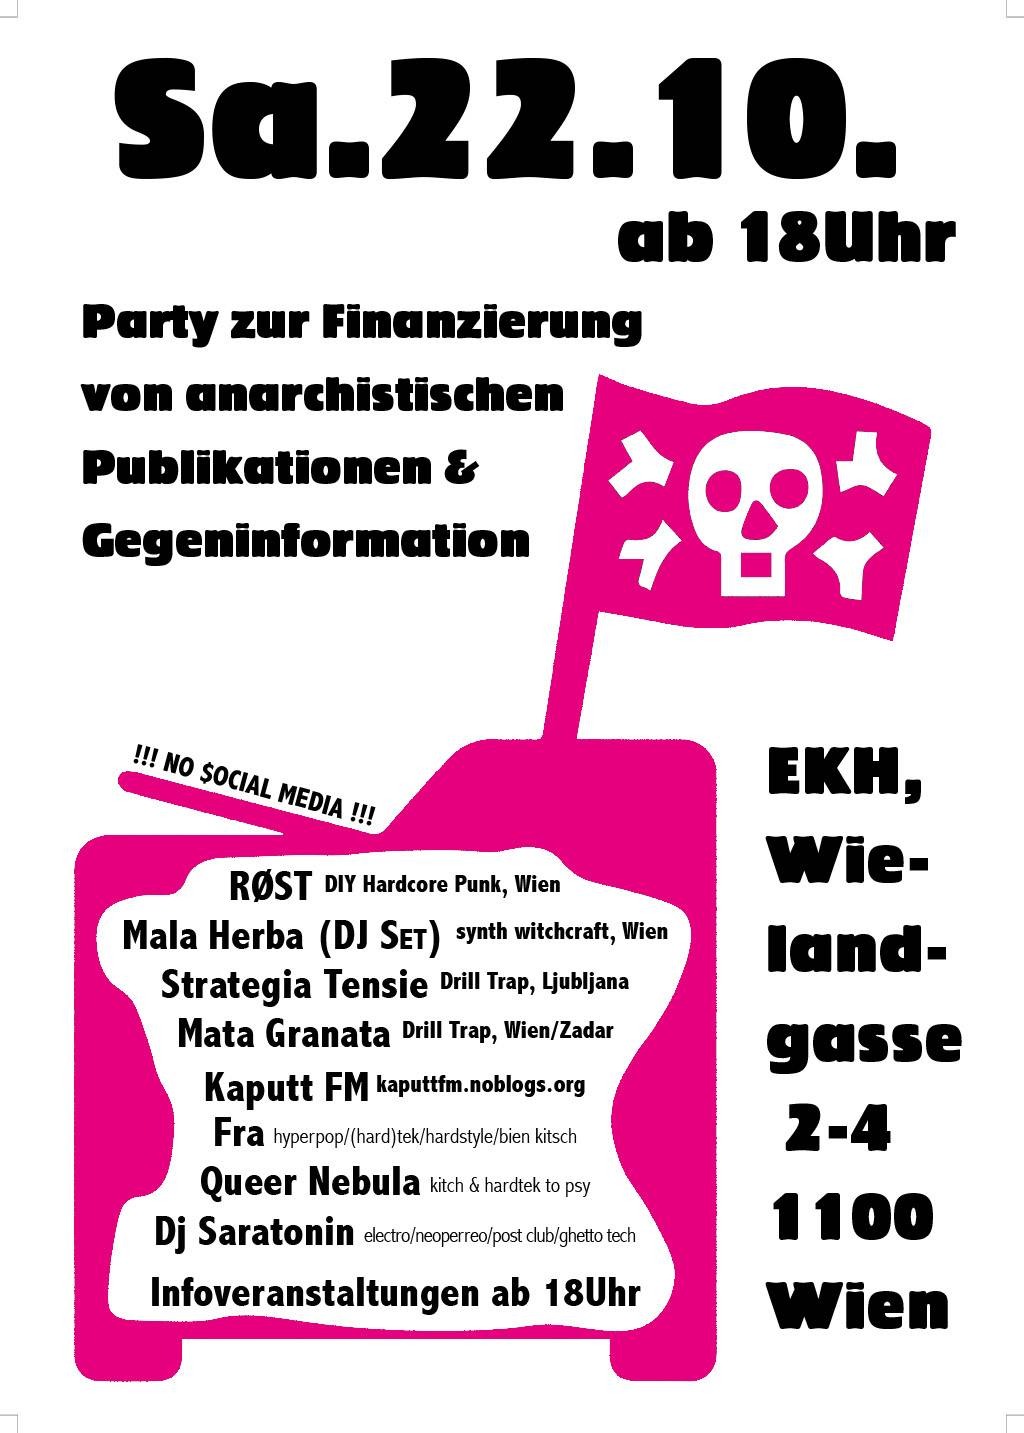 Party zur Finanzierung von anarchistischen Publikationen & Gegeninformationen @ekh